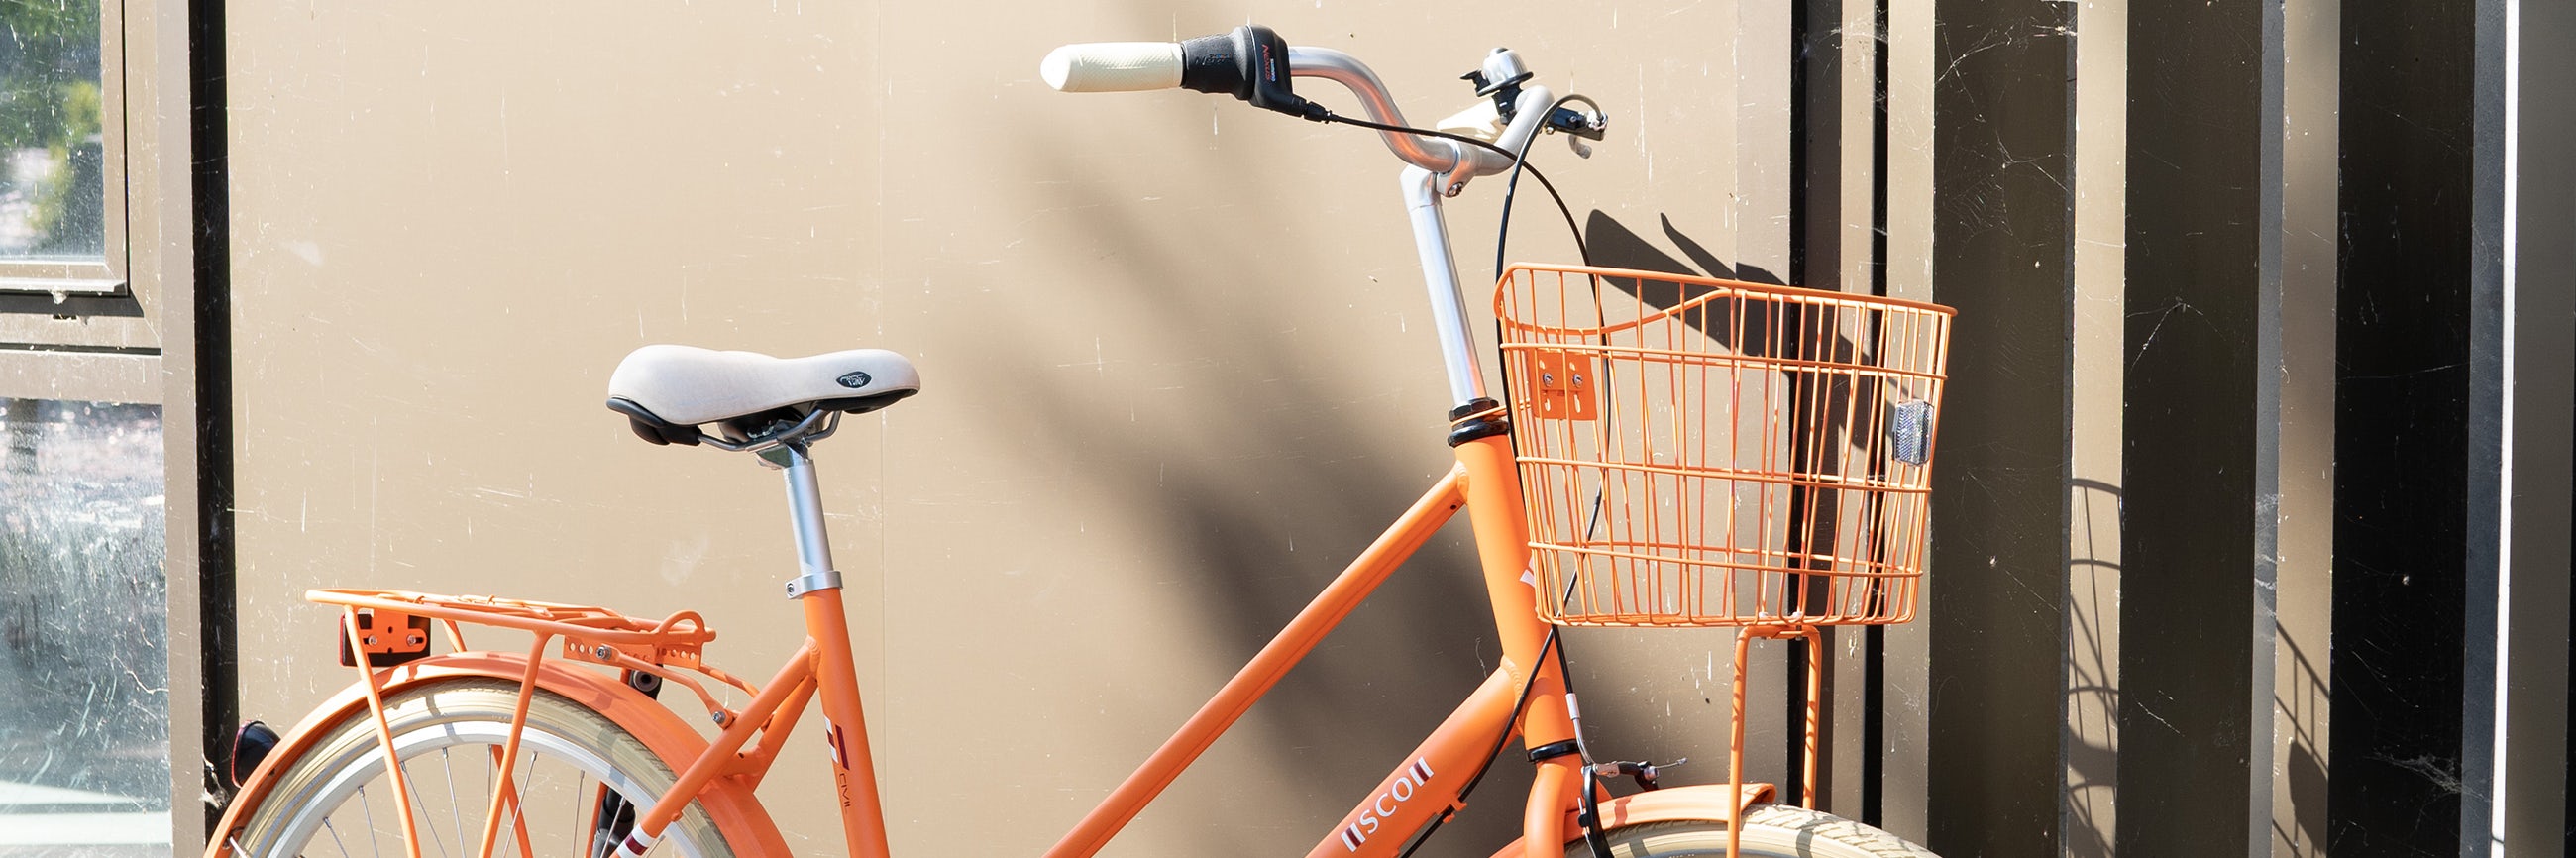 Stilk kupon betale Sådan monterer du cykel skærmsæt på din citybike | Bilka.dk